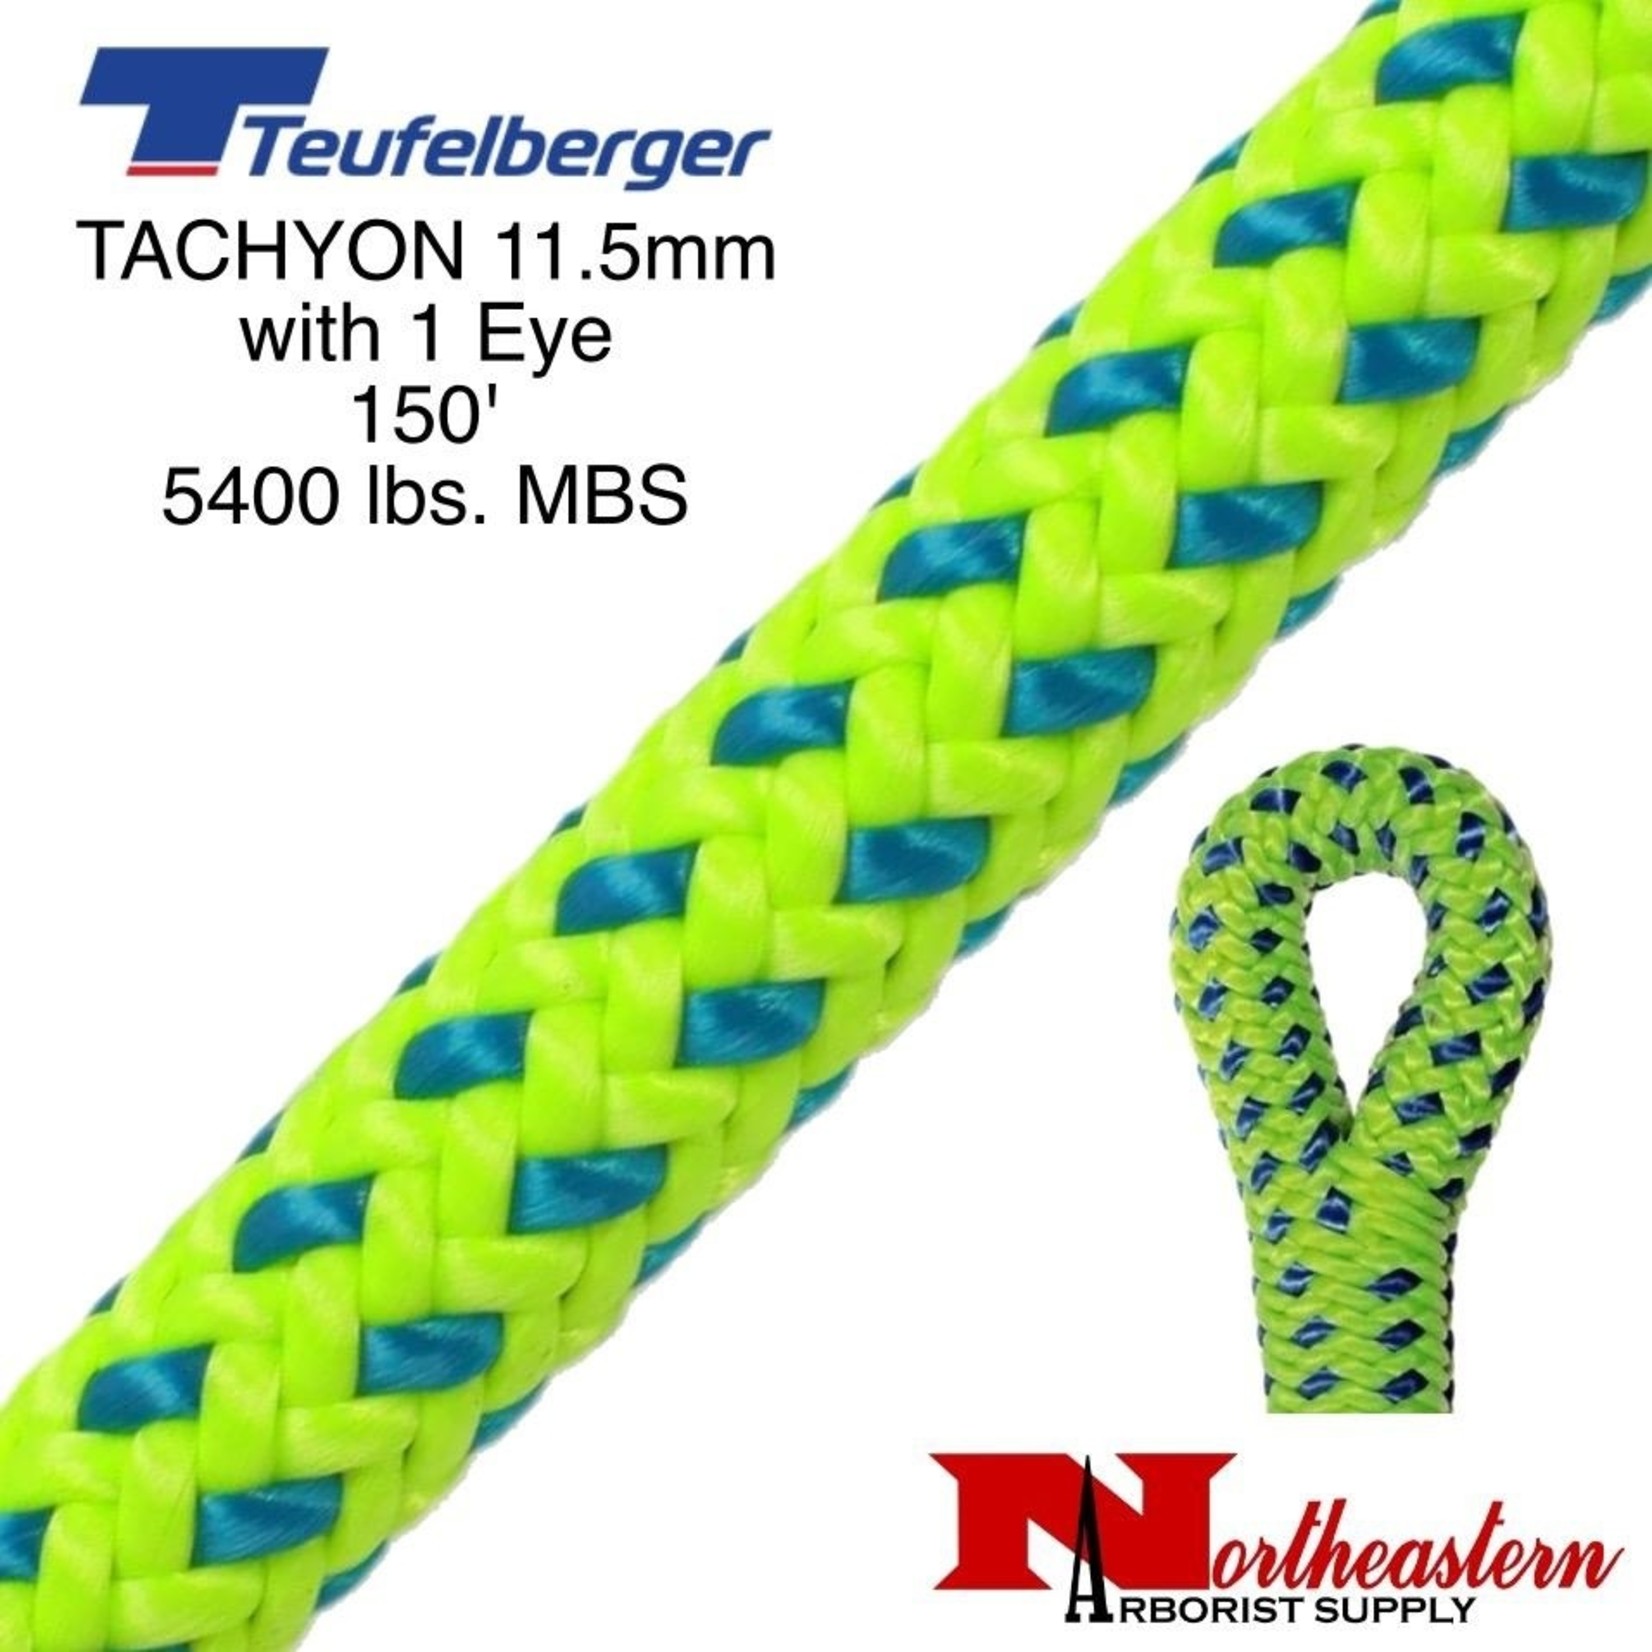 Teufelberger Tachyon 11.5mm x 150' 1" Eye One End, Green/Blue 5400 Lbs. MBS